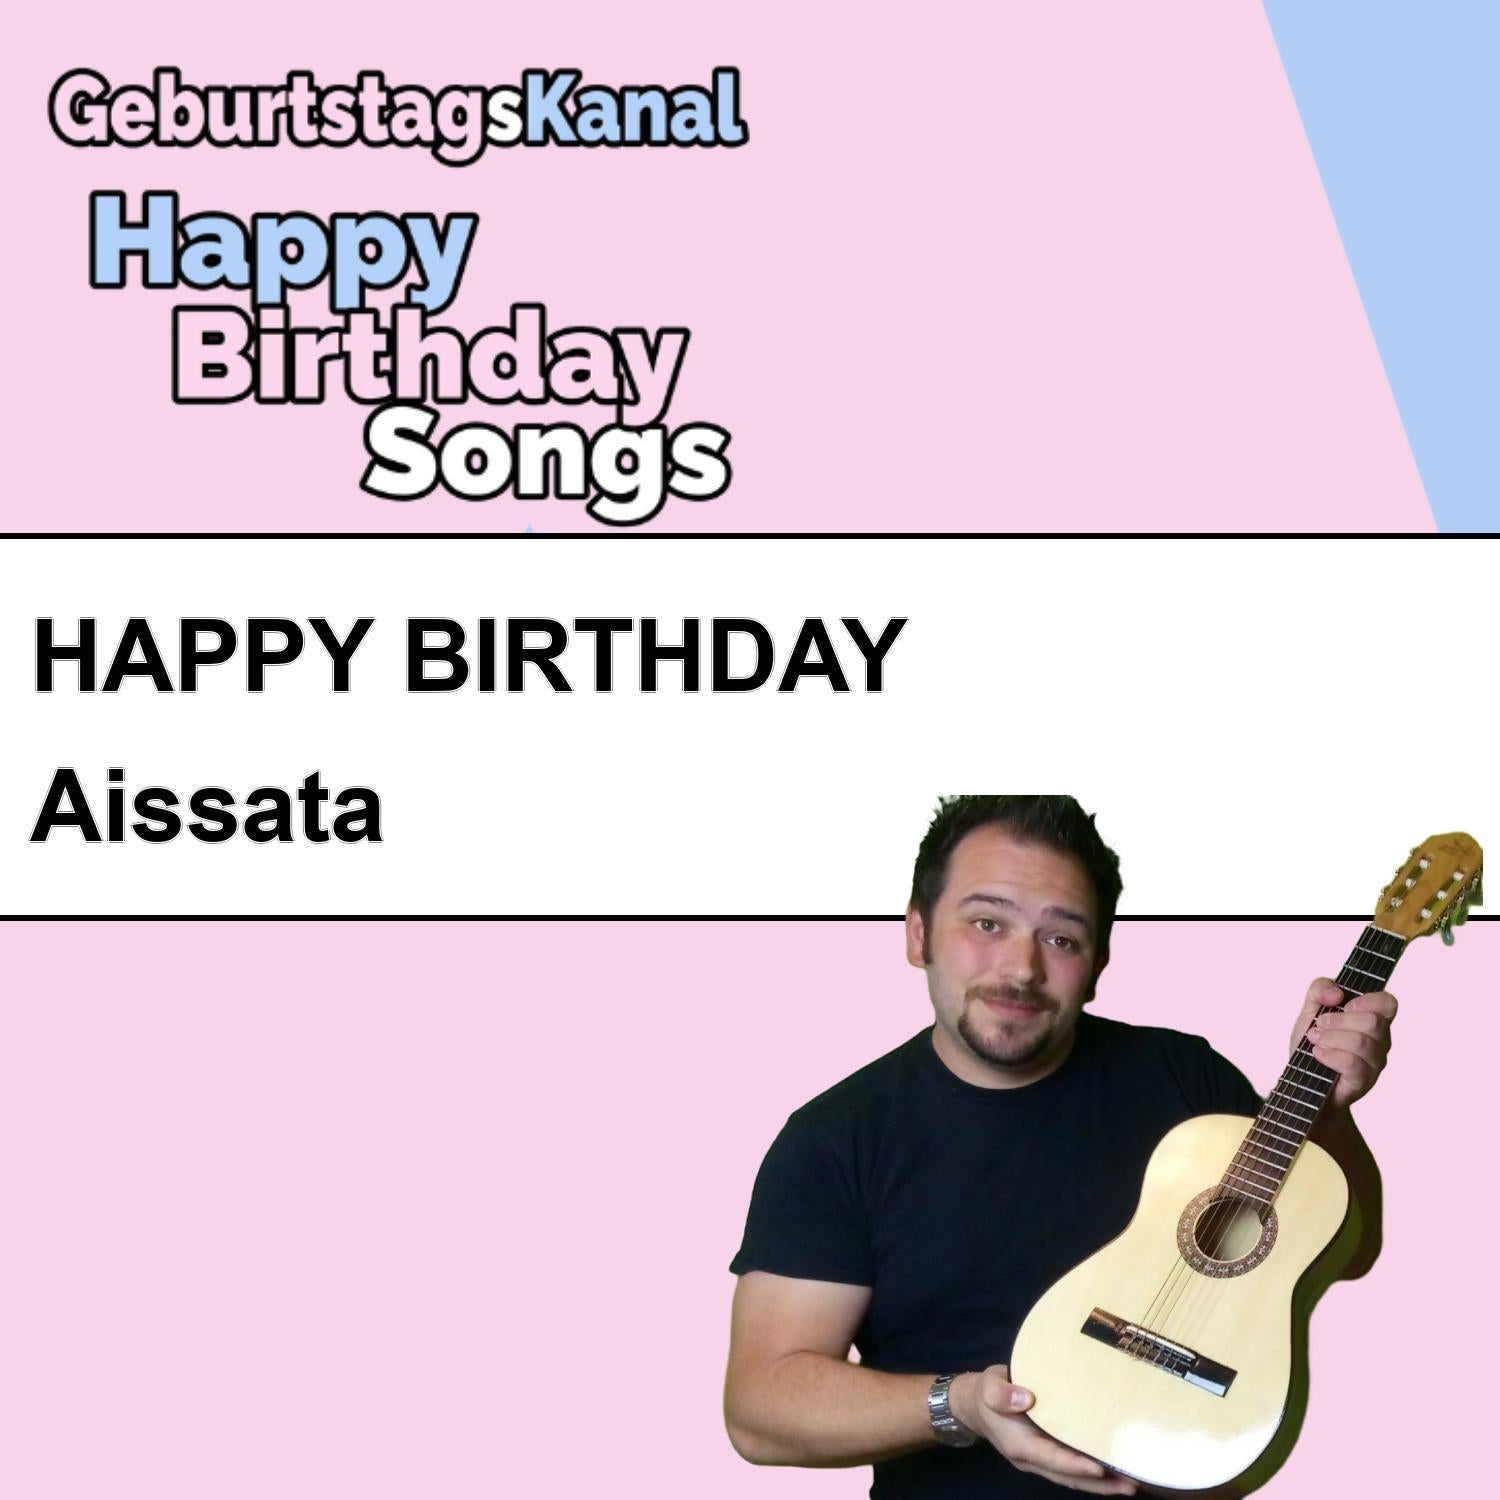 Produktbild Happy Birthday to you Aissata mit Wunschgrußbotschaft